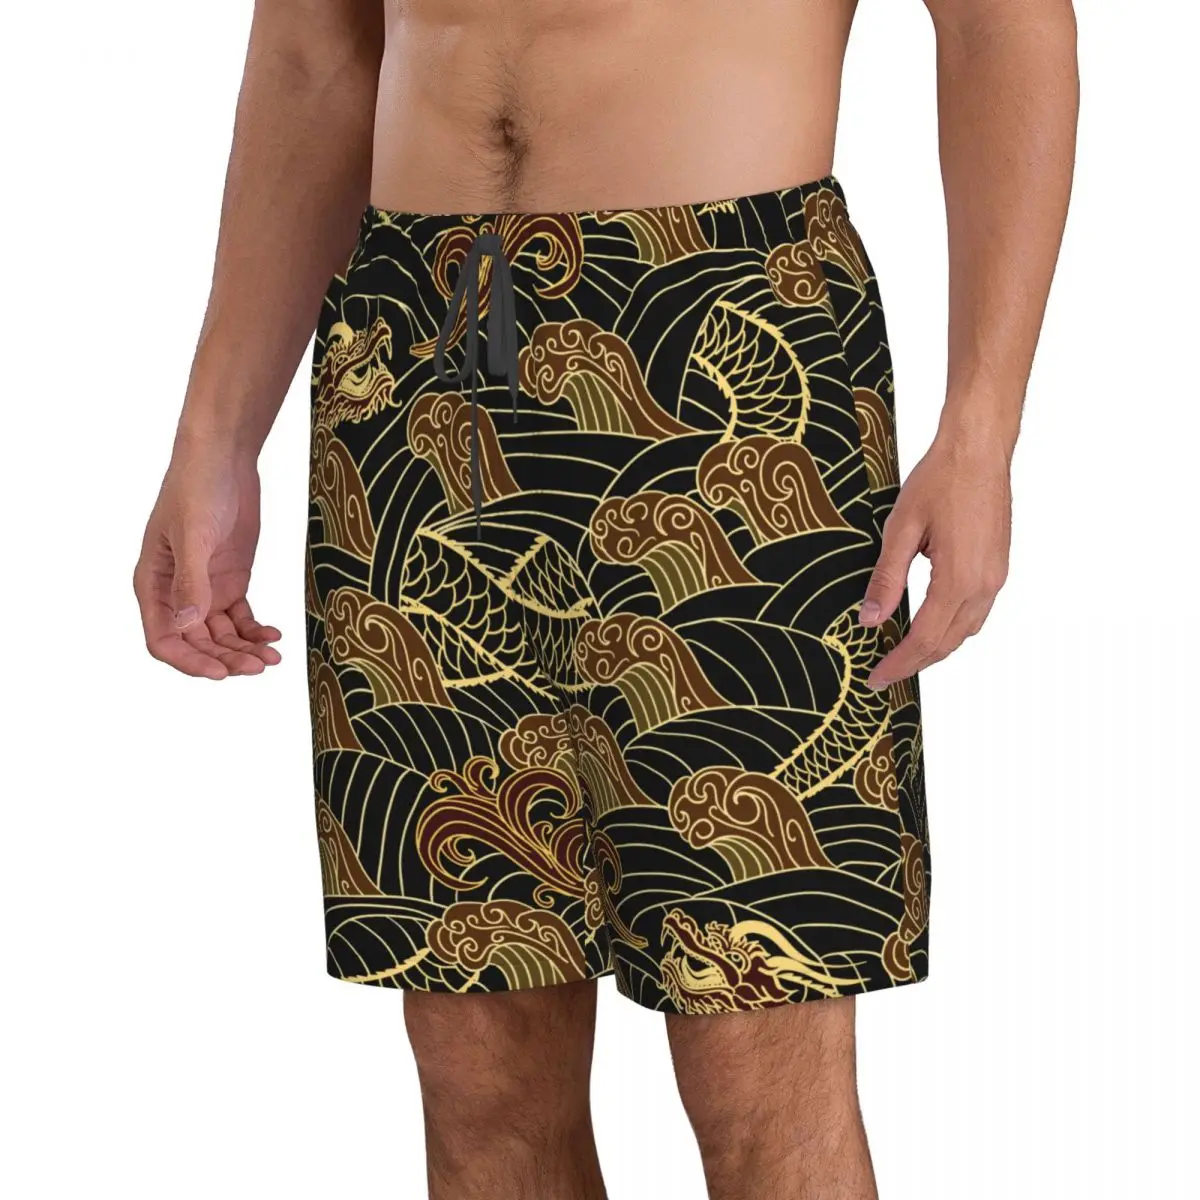 Летние мужские купальники Шорты Традиционная пляжная одежда Dragon Плавки Мужской купальник Изображение 2